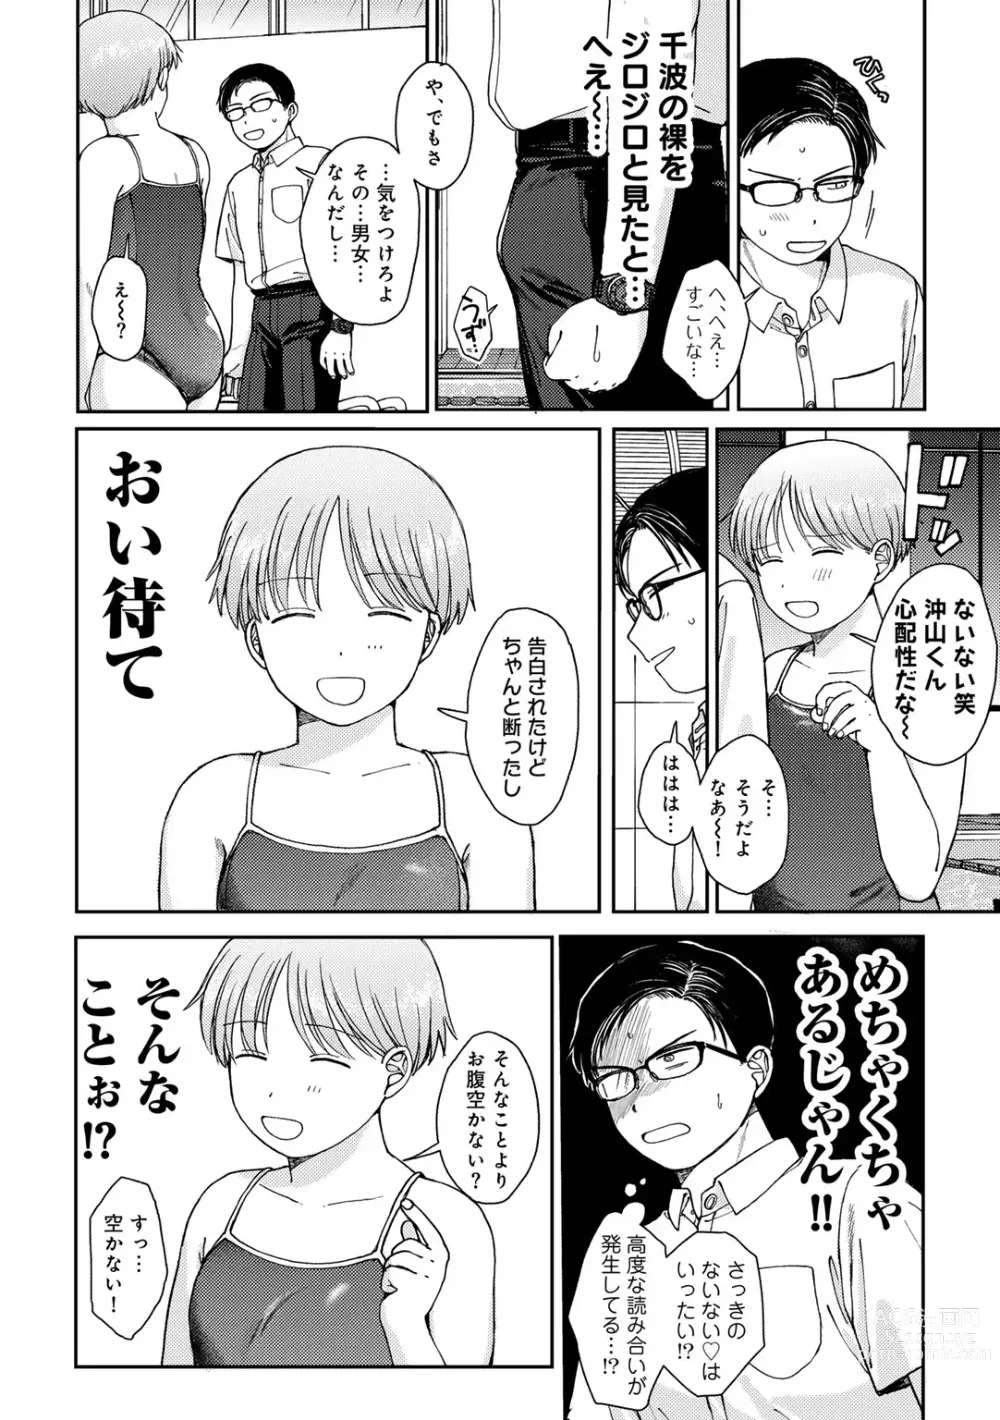 Page 10 of manga COMIC kisshug vol.4